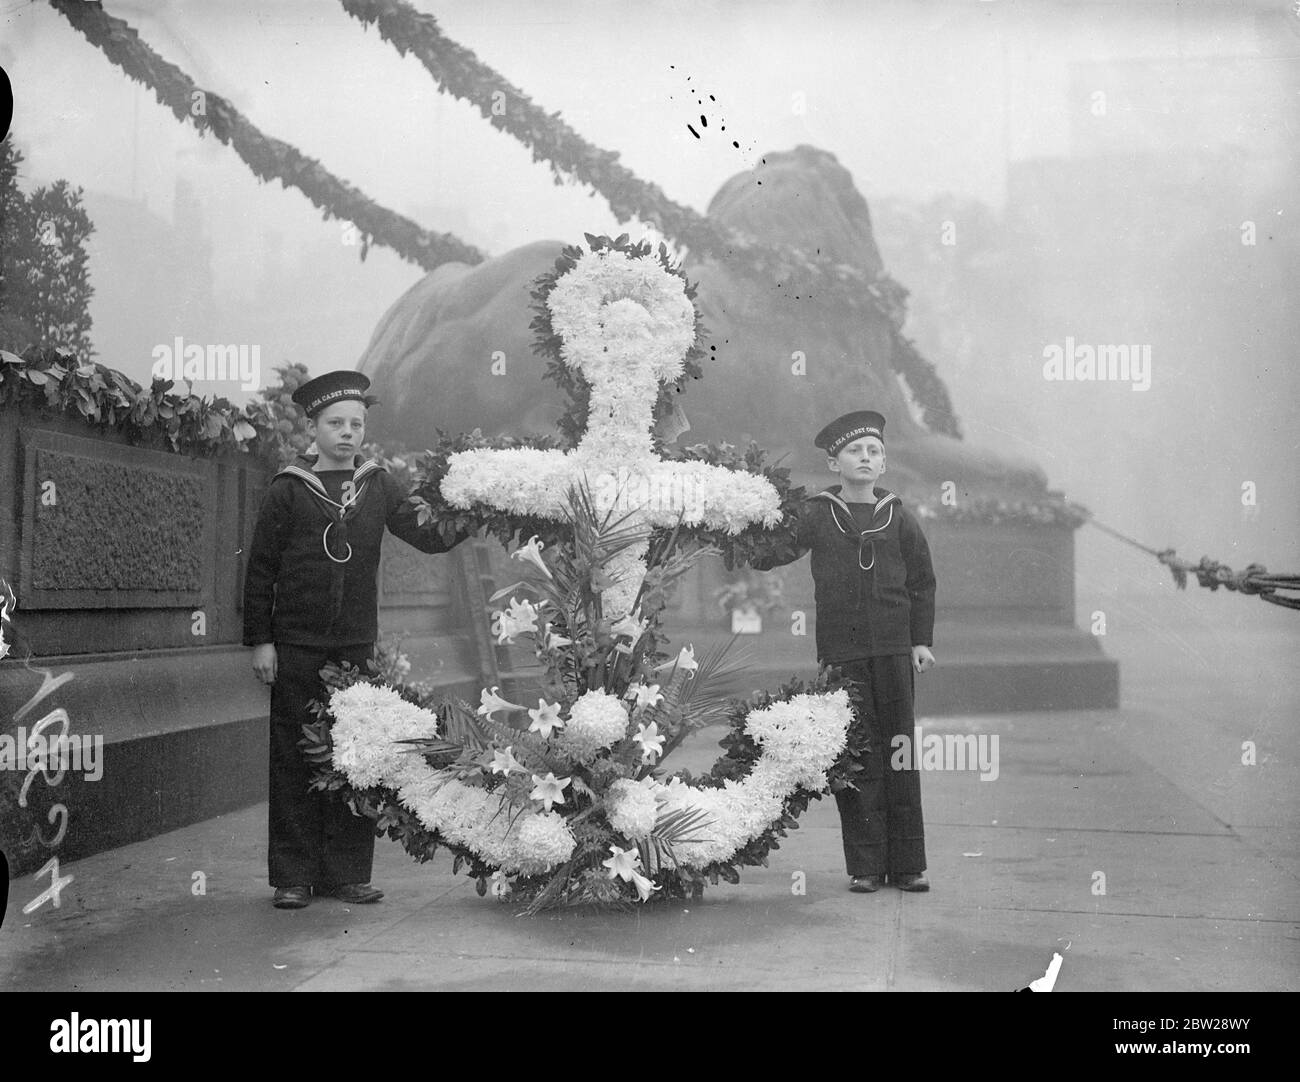 Geheimnisse des Lay Kranz auf Nelson Monument am Trafalgar Day.. Am Trafalgar-Tag wurden Kränze auf die Nelson-Säule am Trafalgar Square gelegt. Dies ist der 132. Jahrestag der Schlacht. Foto zeigt zwei junge Mitglieder des Sea Cadet Corps, mit einem Kranz von der Royal Naval Barracks, Portsmouth, an der Nelson-Säule. 21. Oktober 1937 Stockfoto